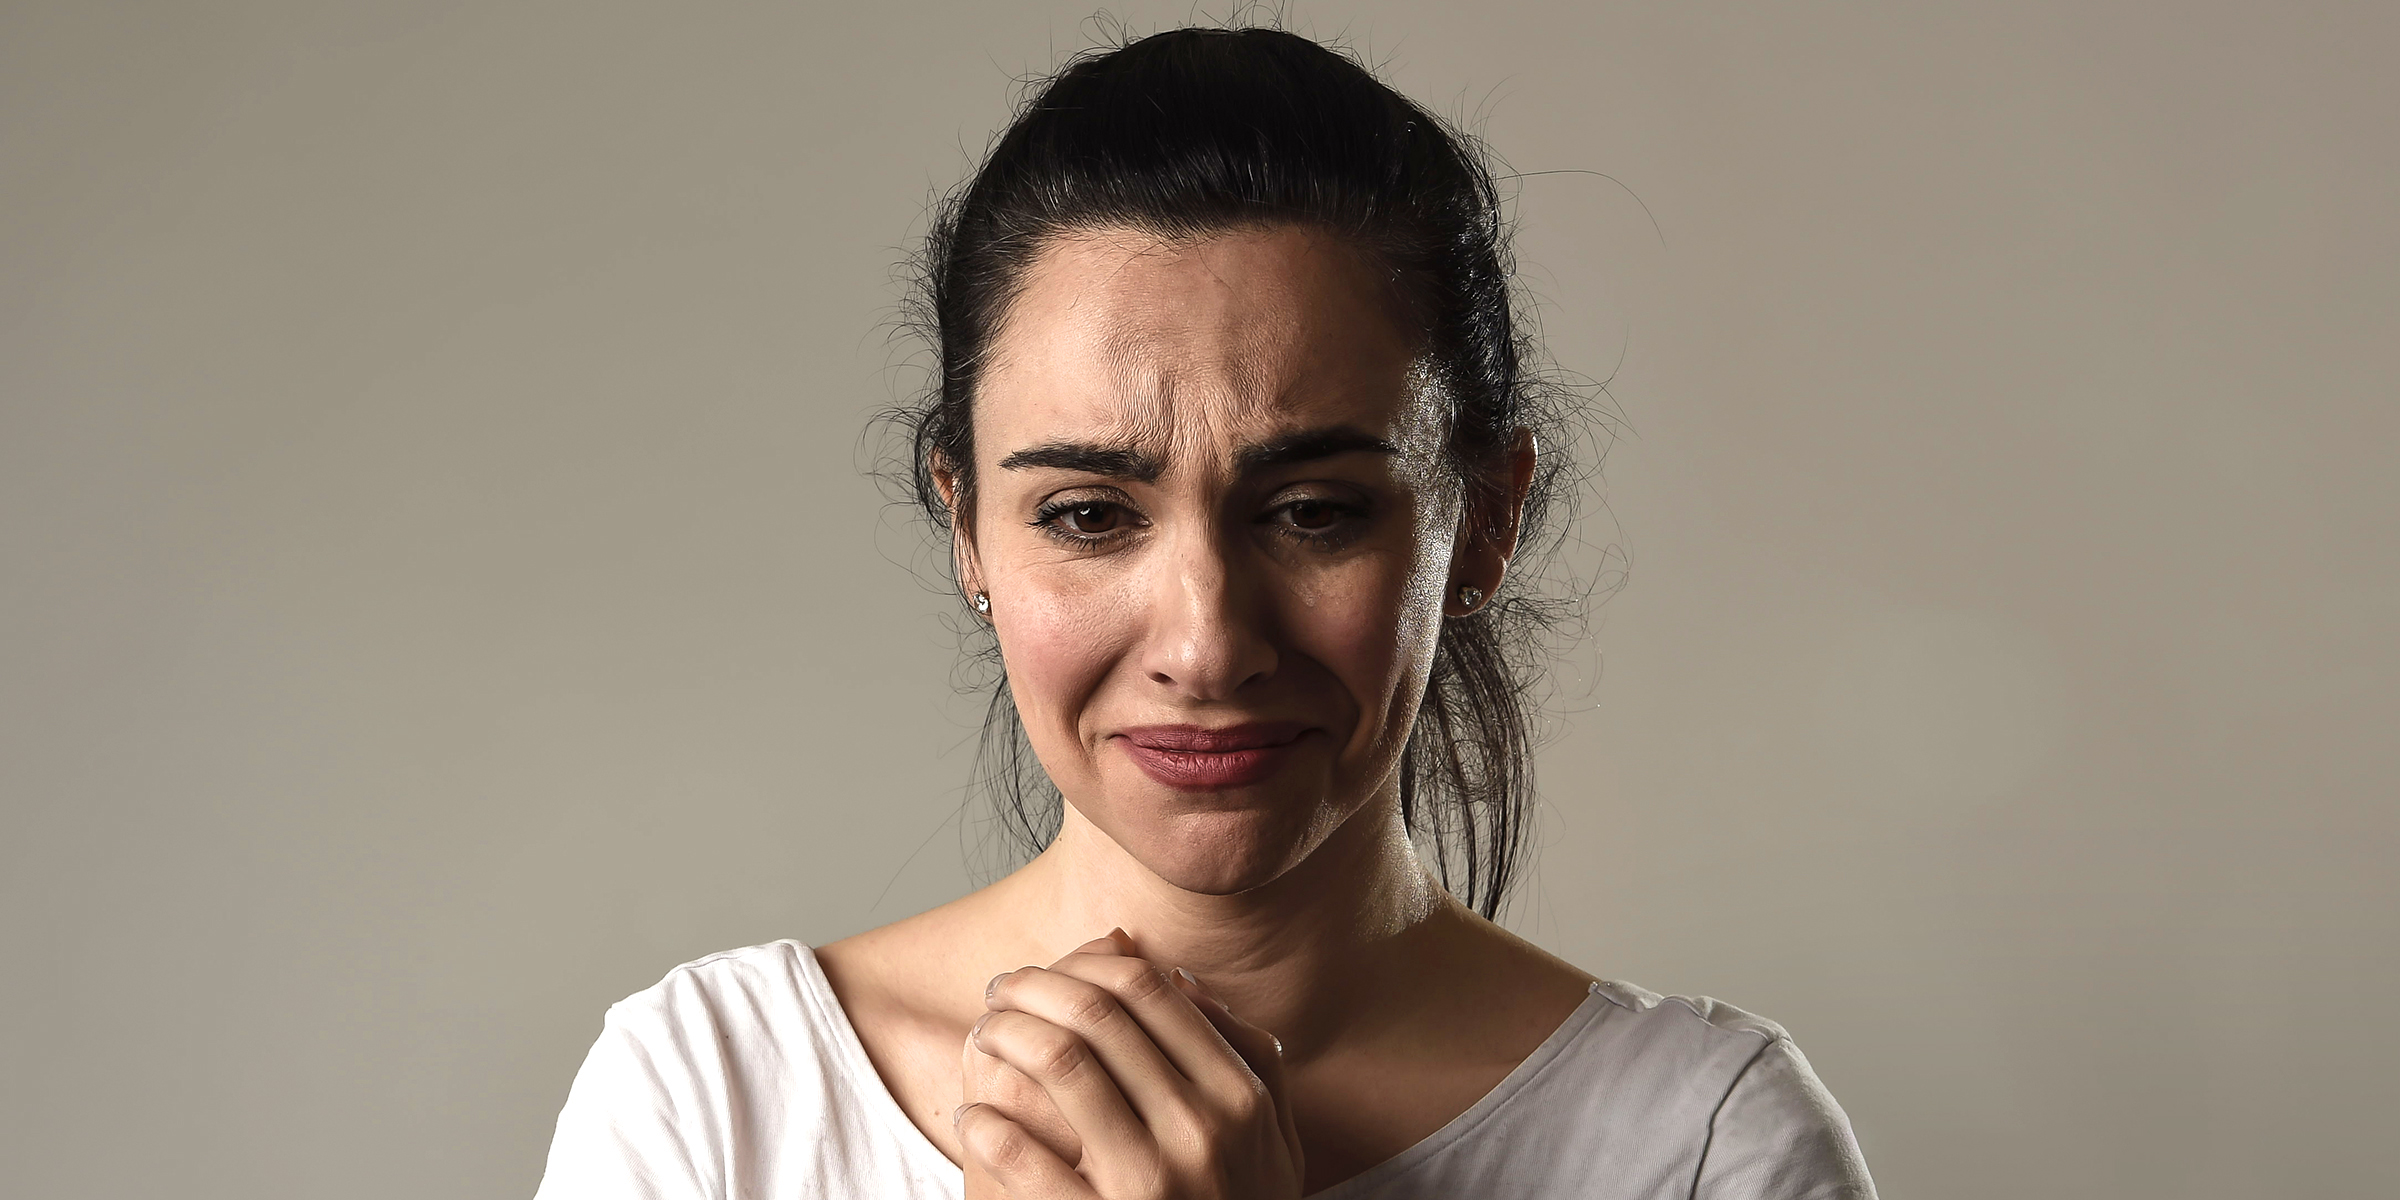 Femme en larmes | Source : Shutterstock